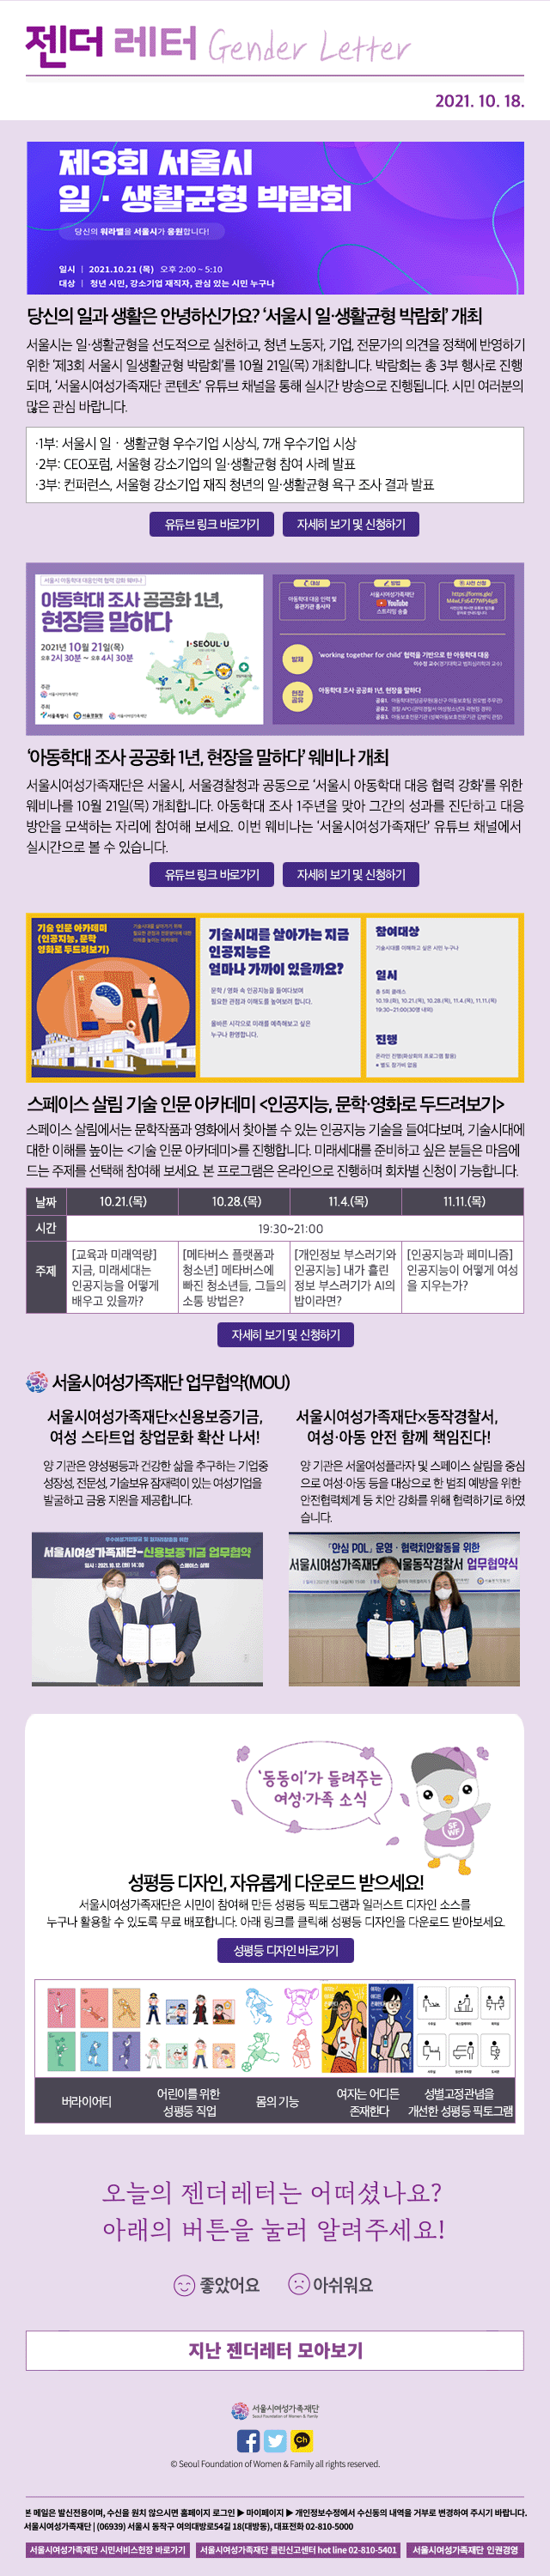 당신의 일과 생활은 안녕하신가요? ‘서울시 일·생활균형 박람회’ 개최